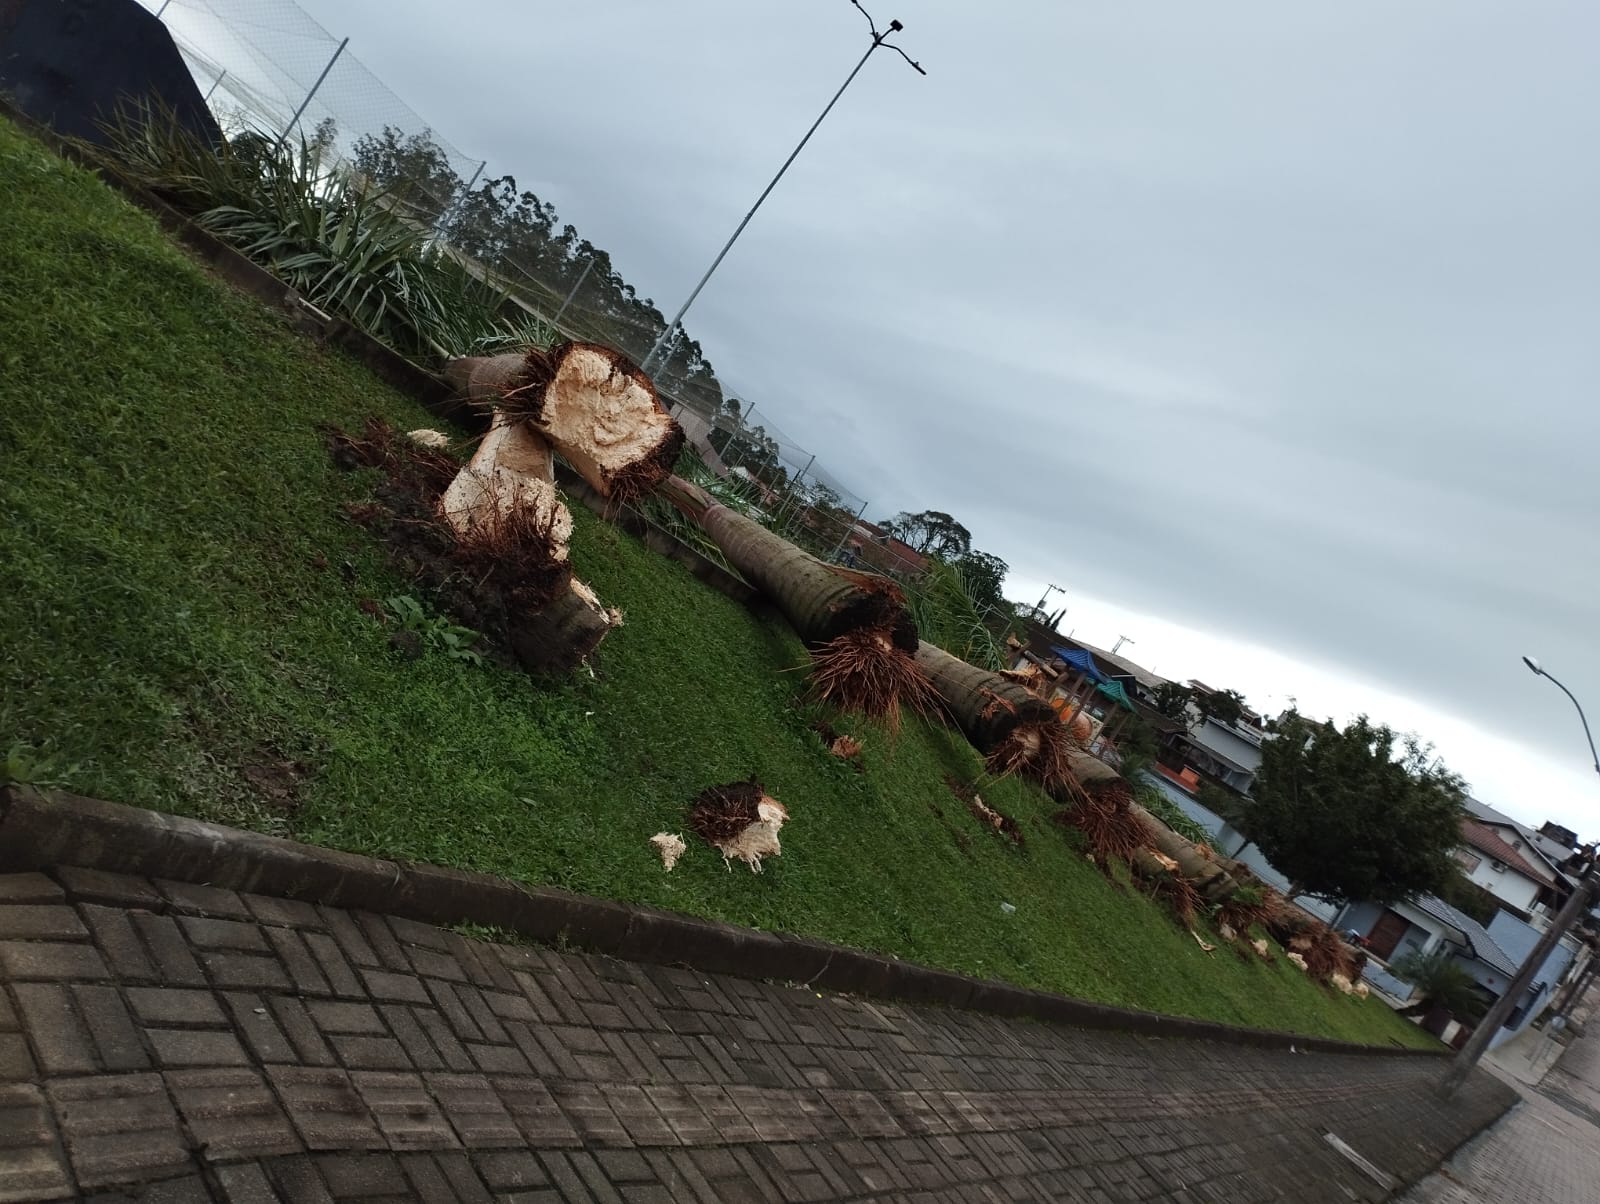 Entenda o motivo dos cortes das árvores na pista de skate, em Taió